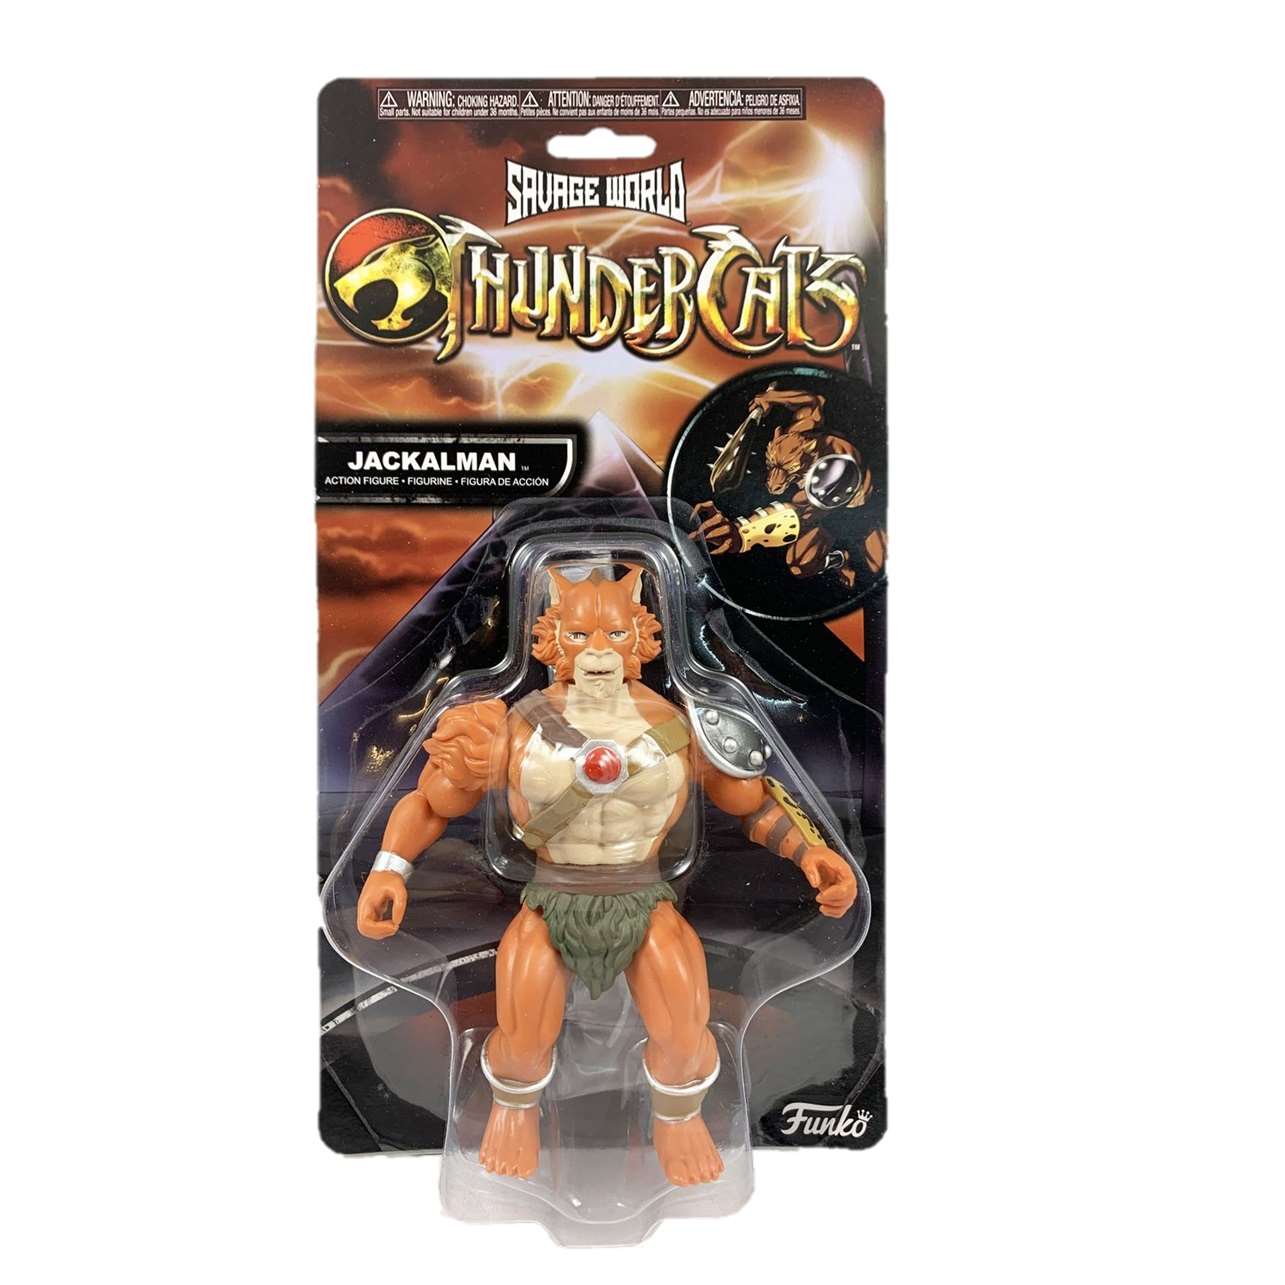 Jackalman Figura Funko Savage World Thundercats 